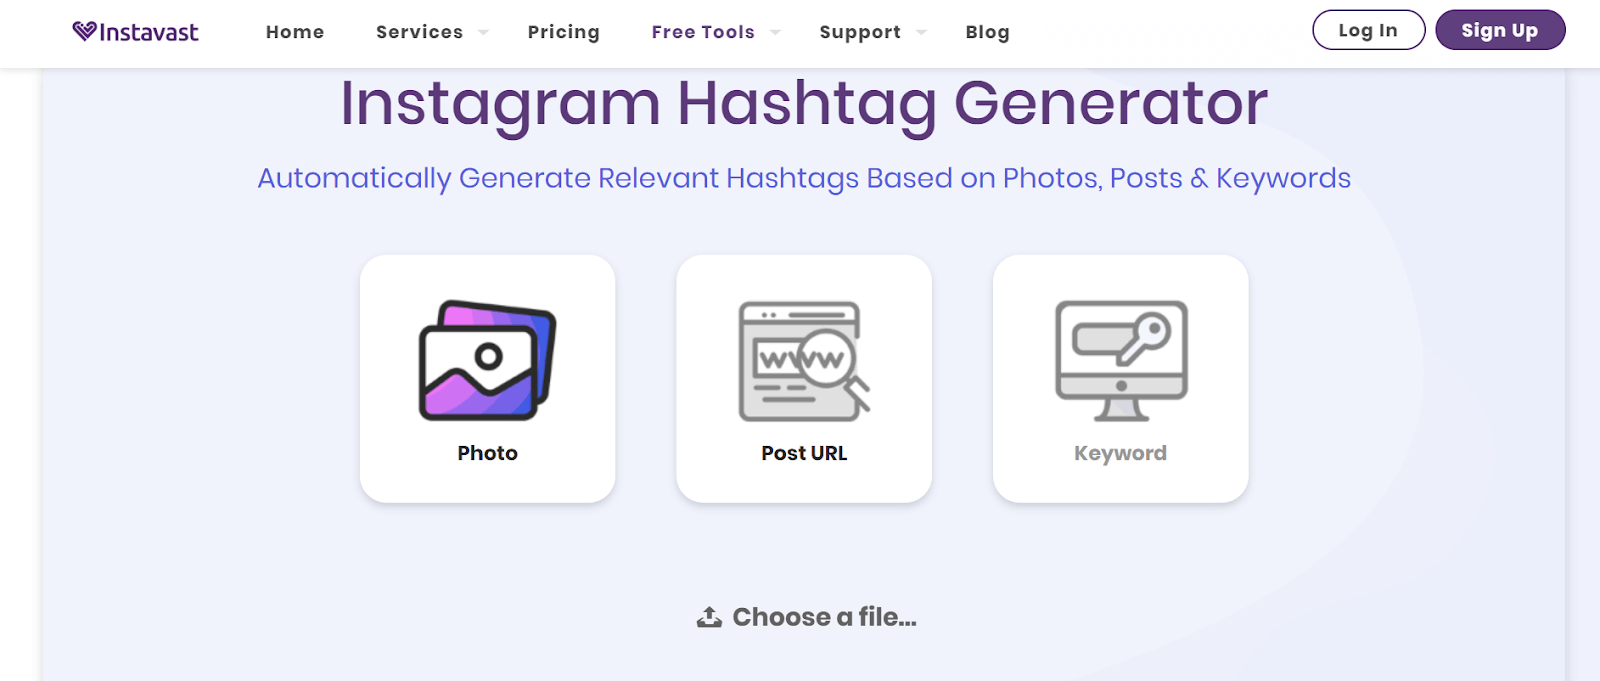 Instavast Instagram Hashtag Generator Tools